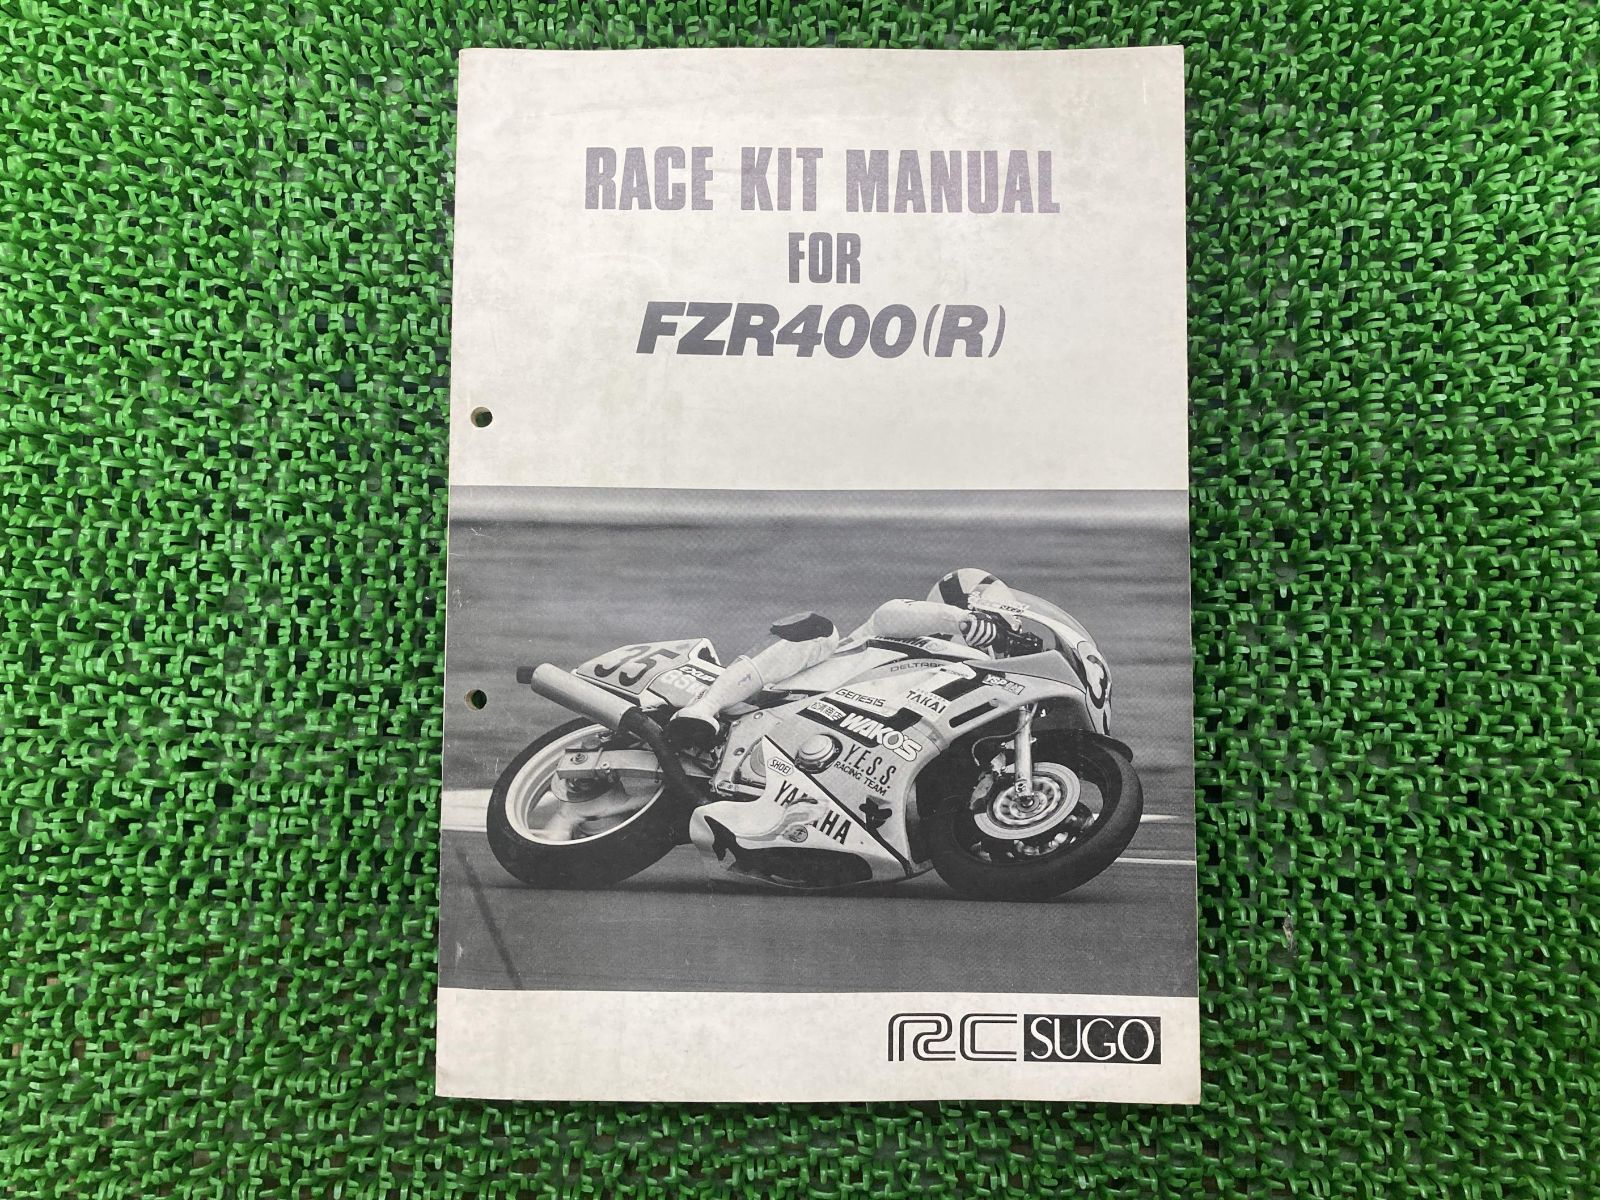 ヤマハ FZR400サービスマニュアル&パーツカタログ&レースキットマニュアル-